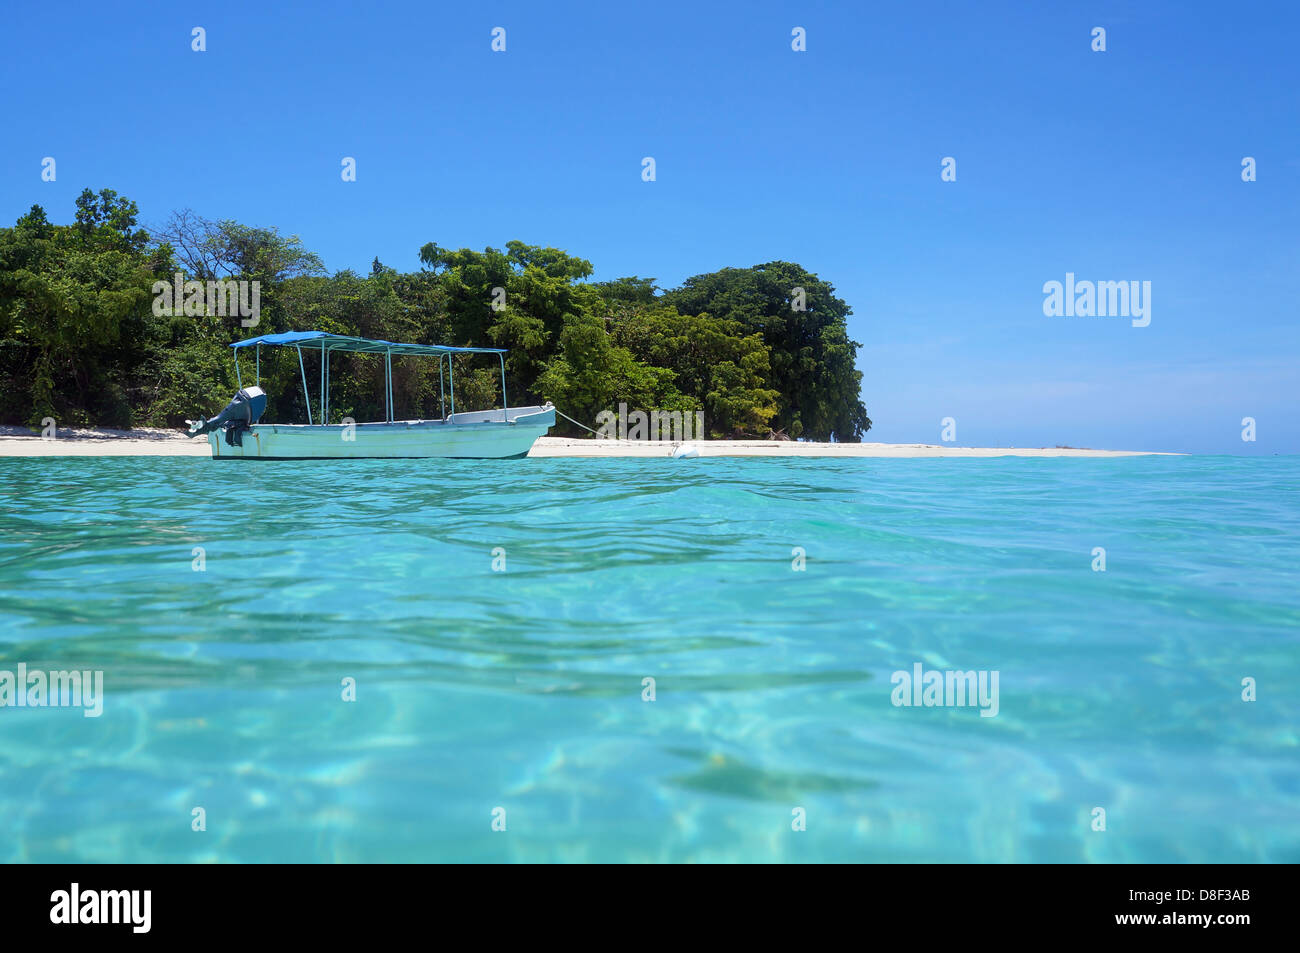 Plage de l'île tropicale avec un bateau dans l'eau turquoise, la mer des Caraïbes, le Panama Banque D'Images